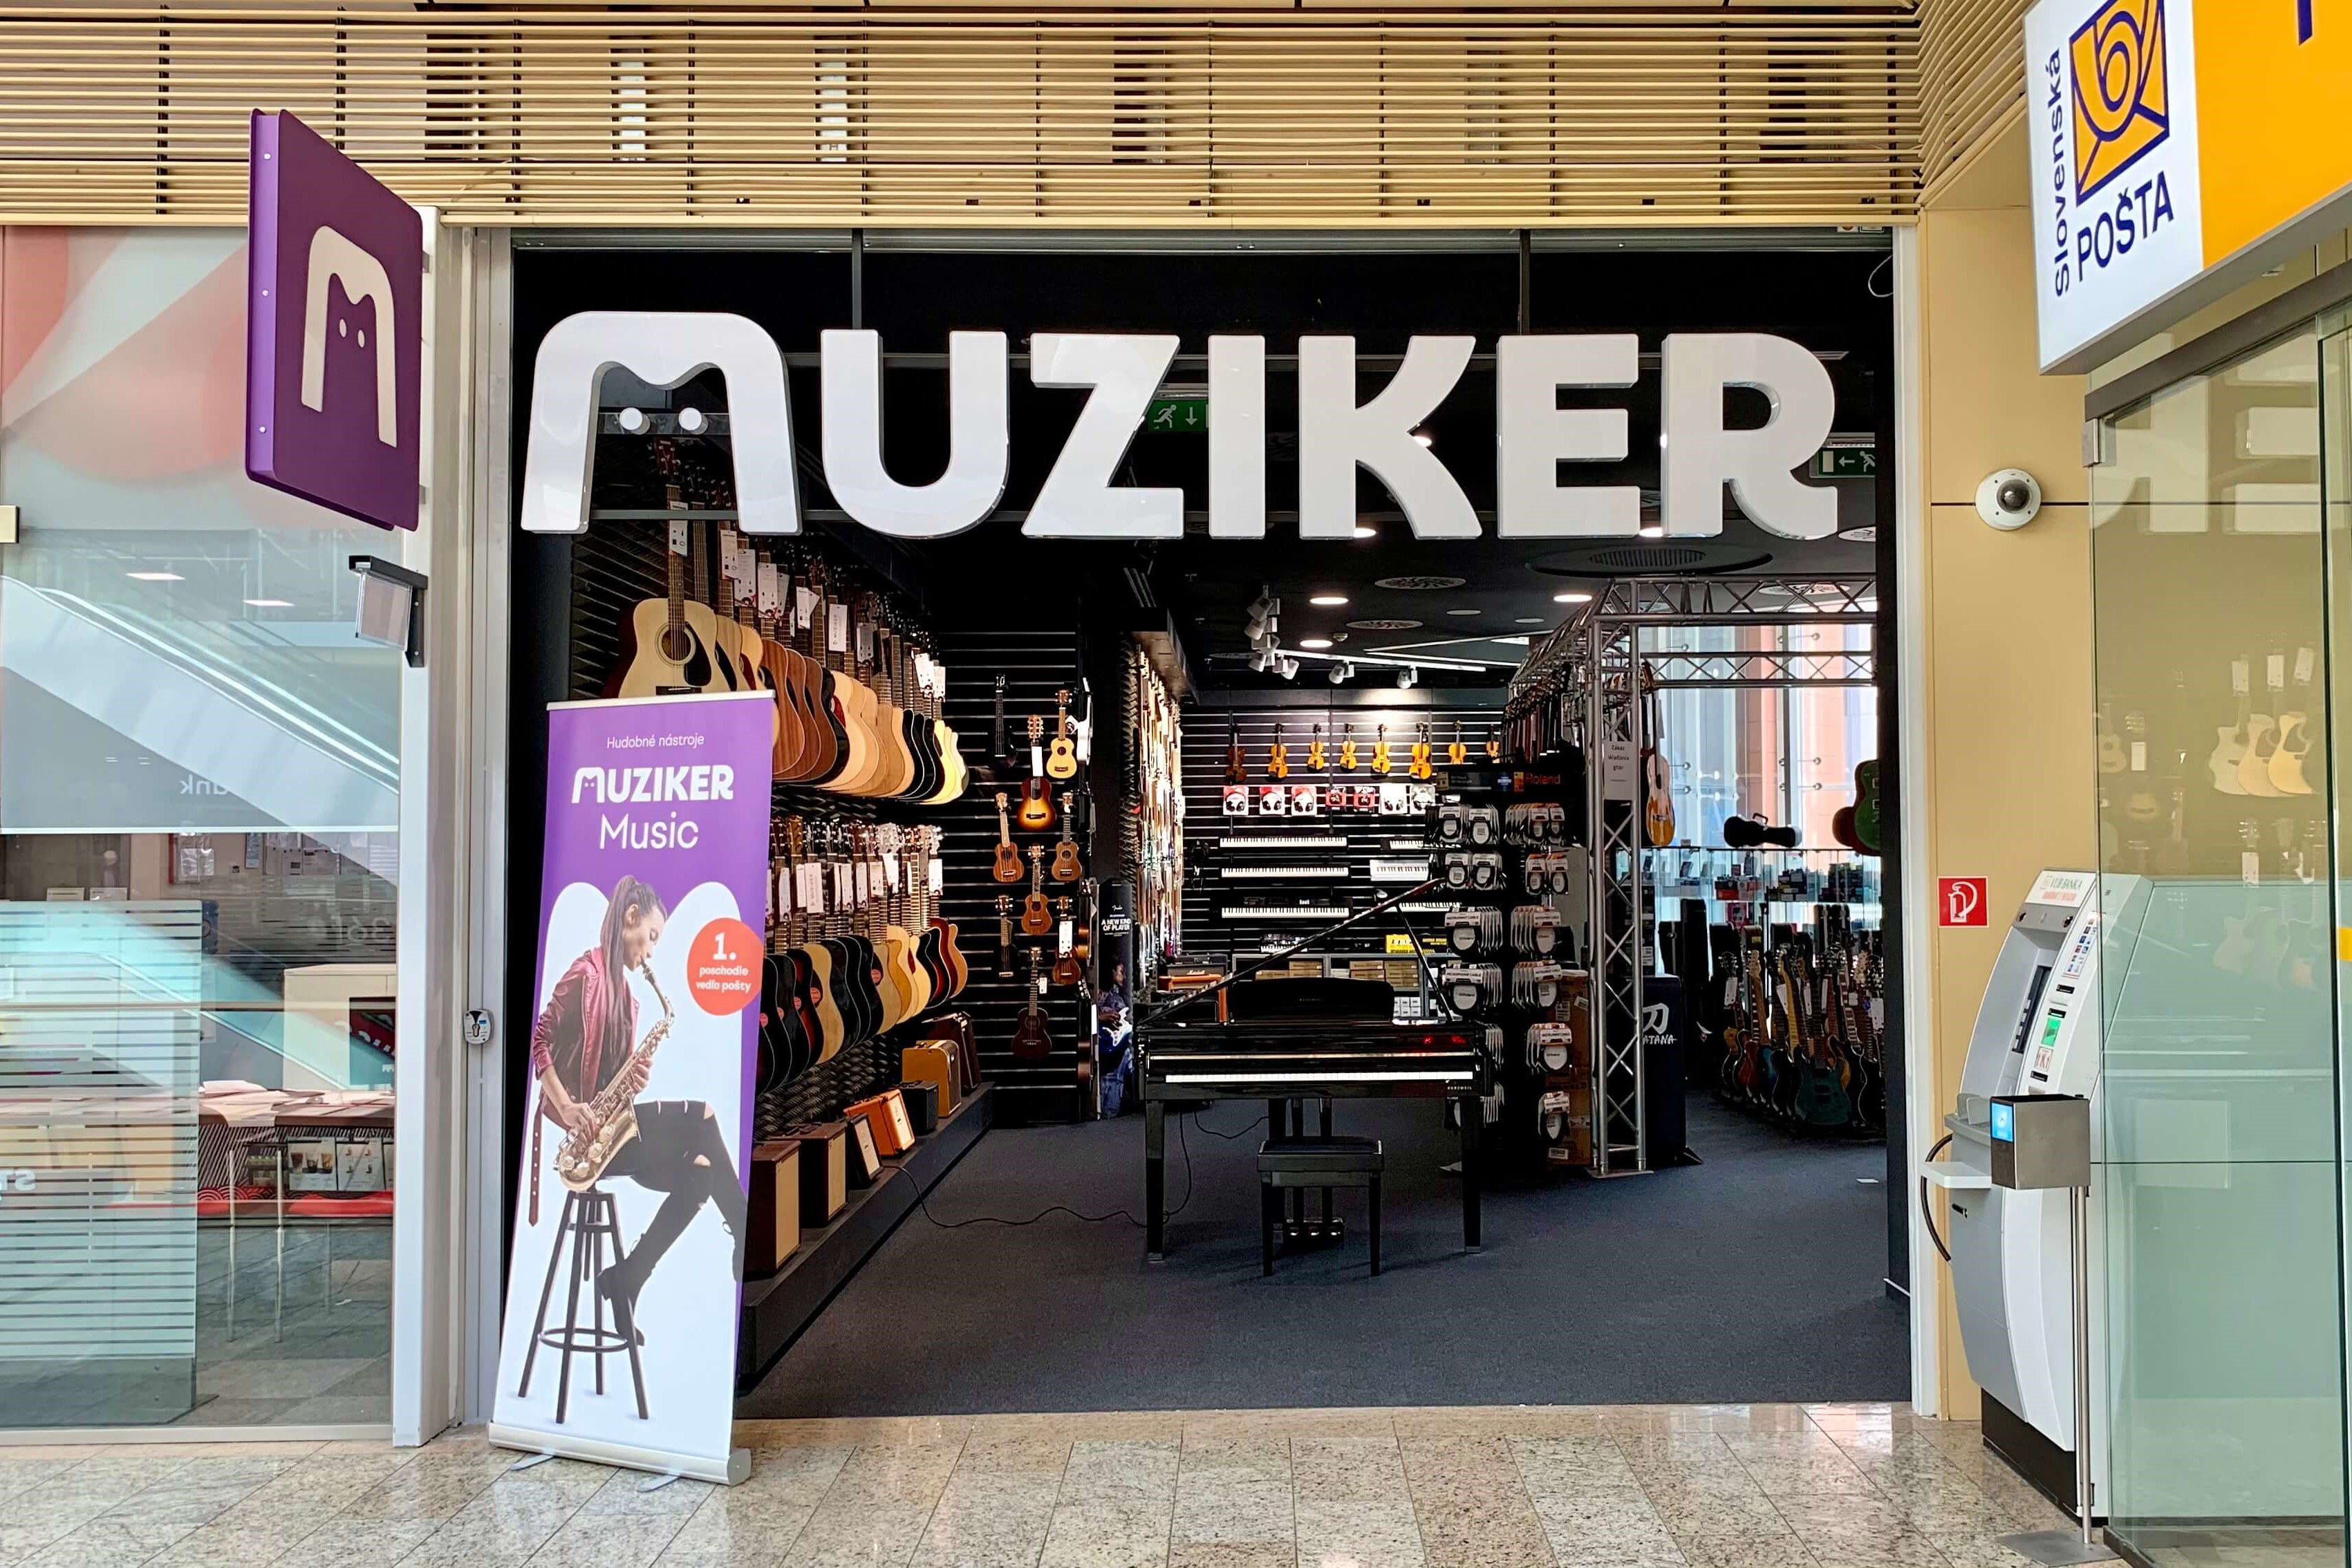 Hangszerek és kiegészítők a Muziker hangszerbolt zsolnai üzletében.